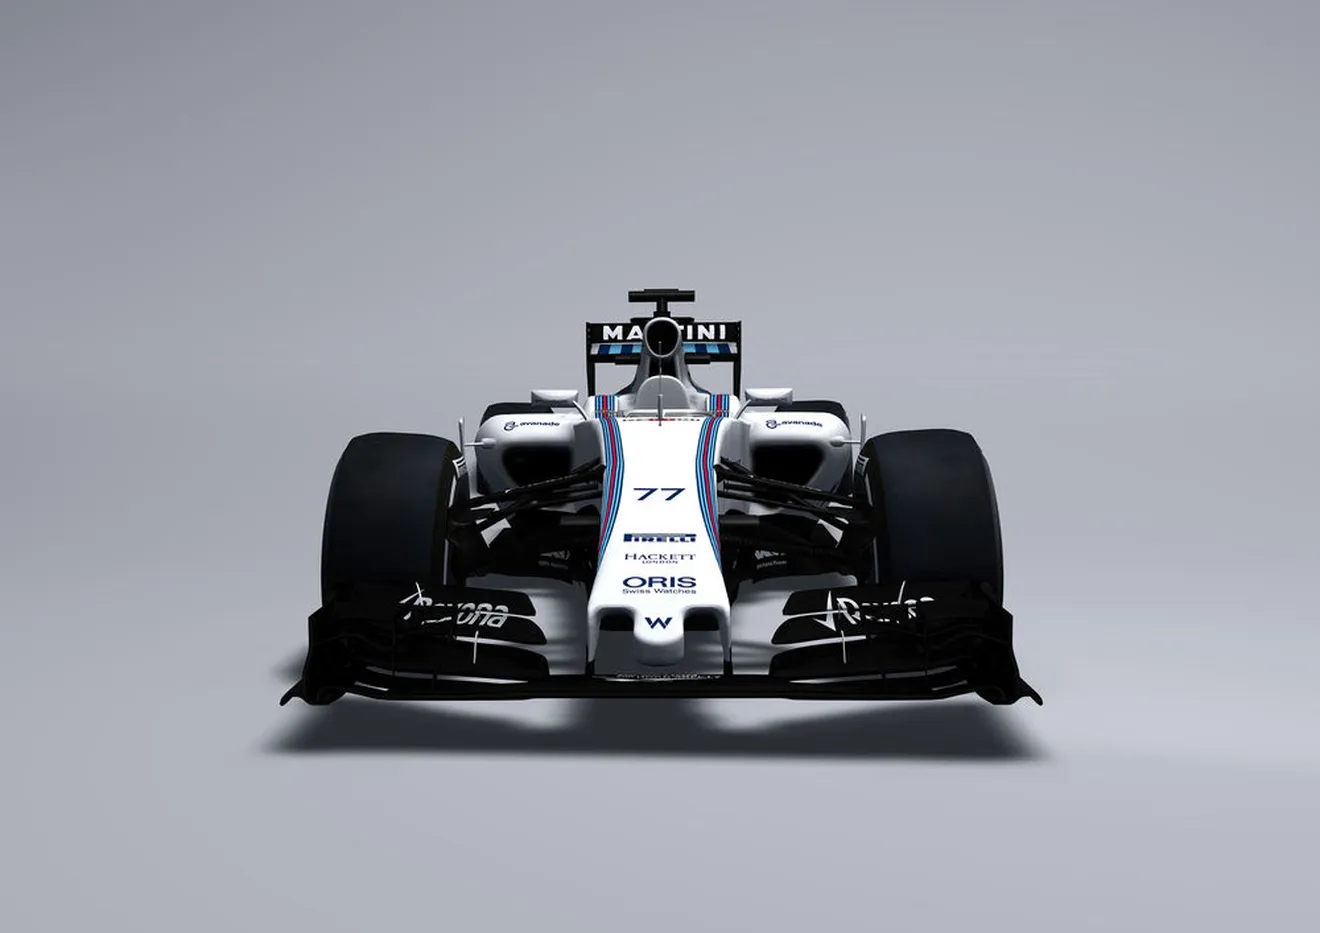 El Williams FW37, primer monoplaza de 2015 en mostrarse